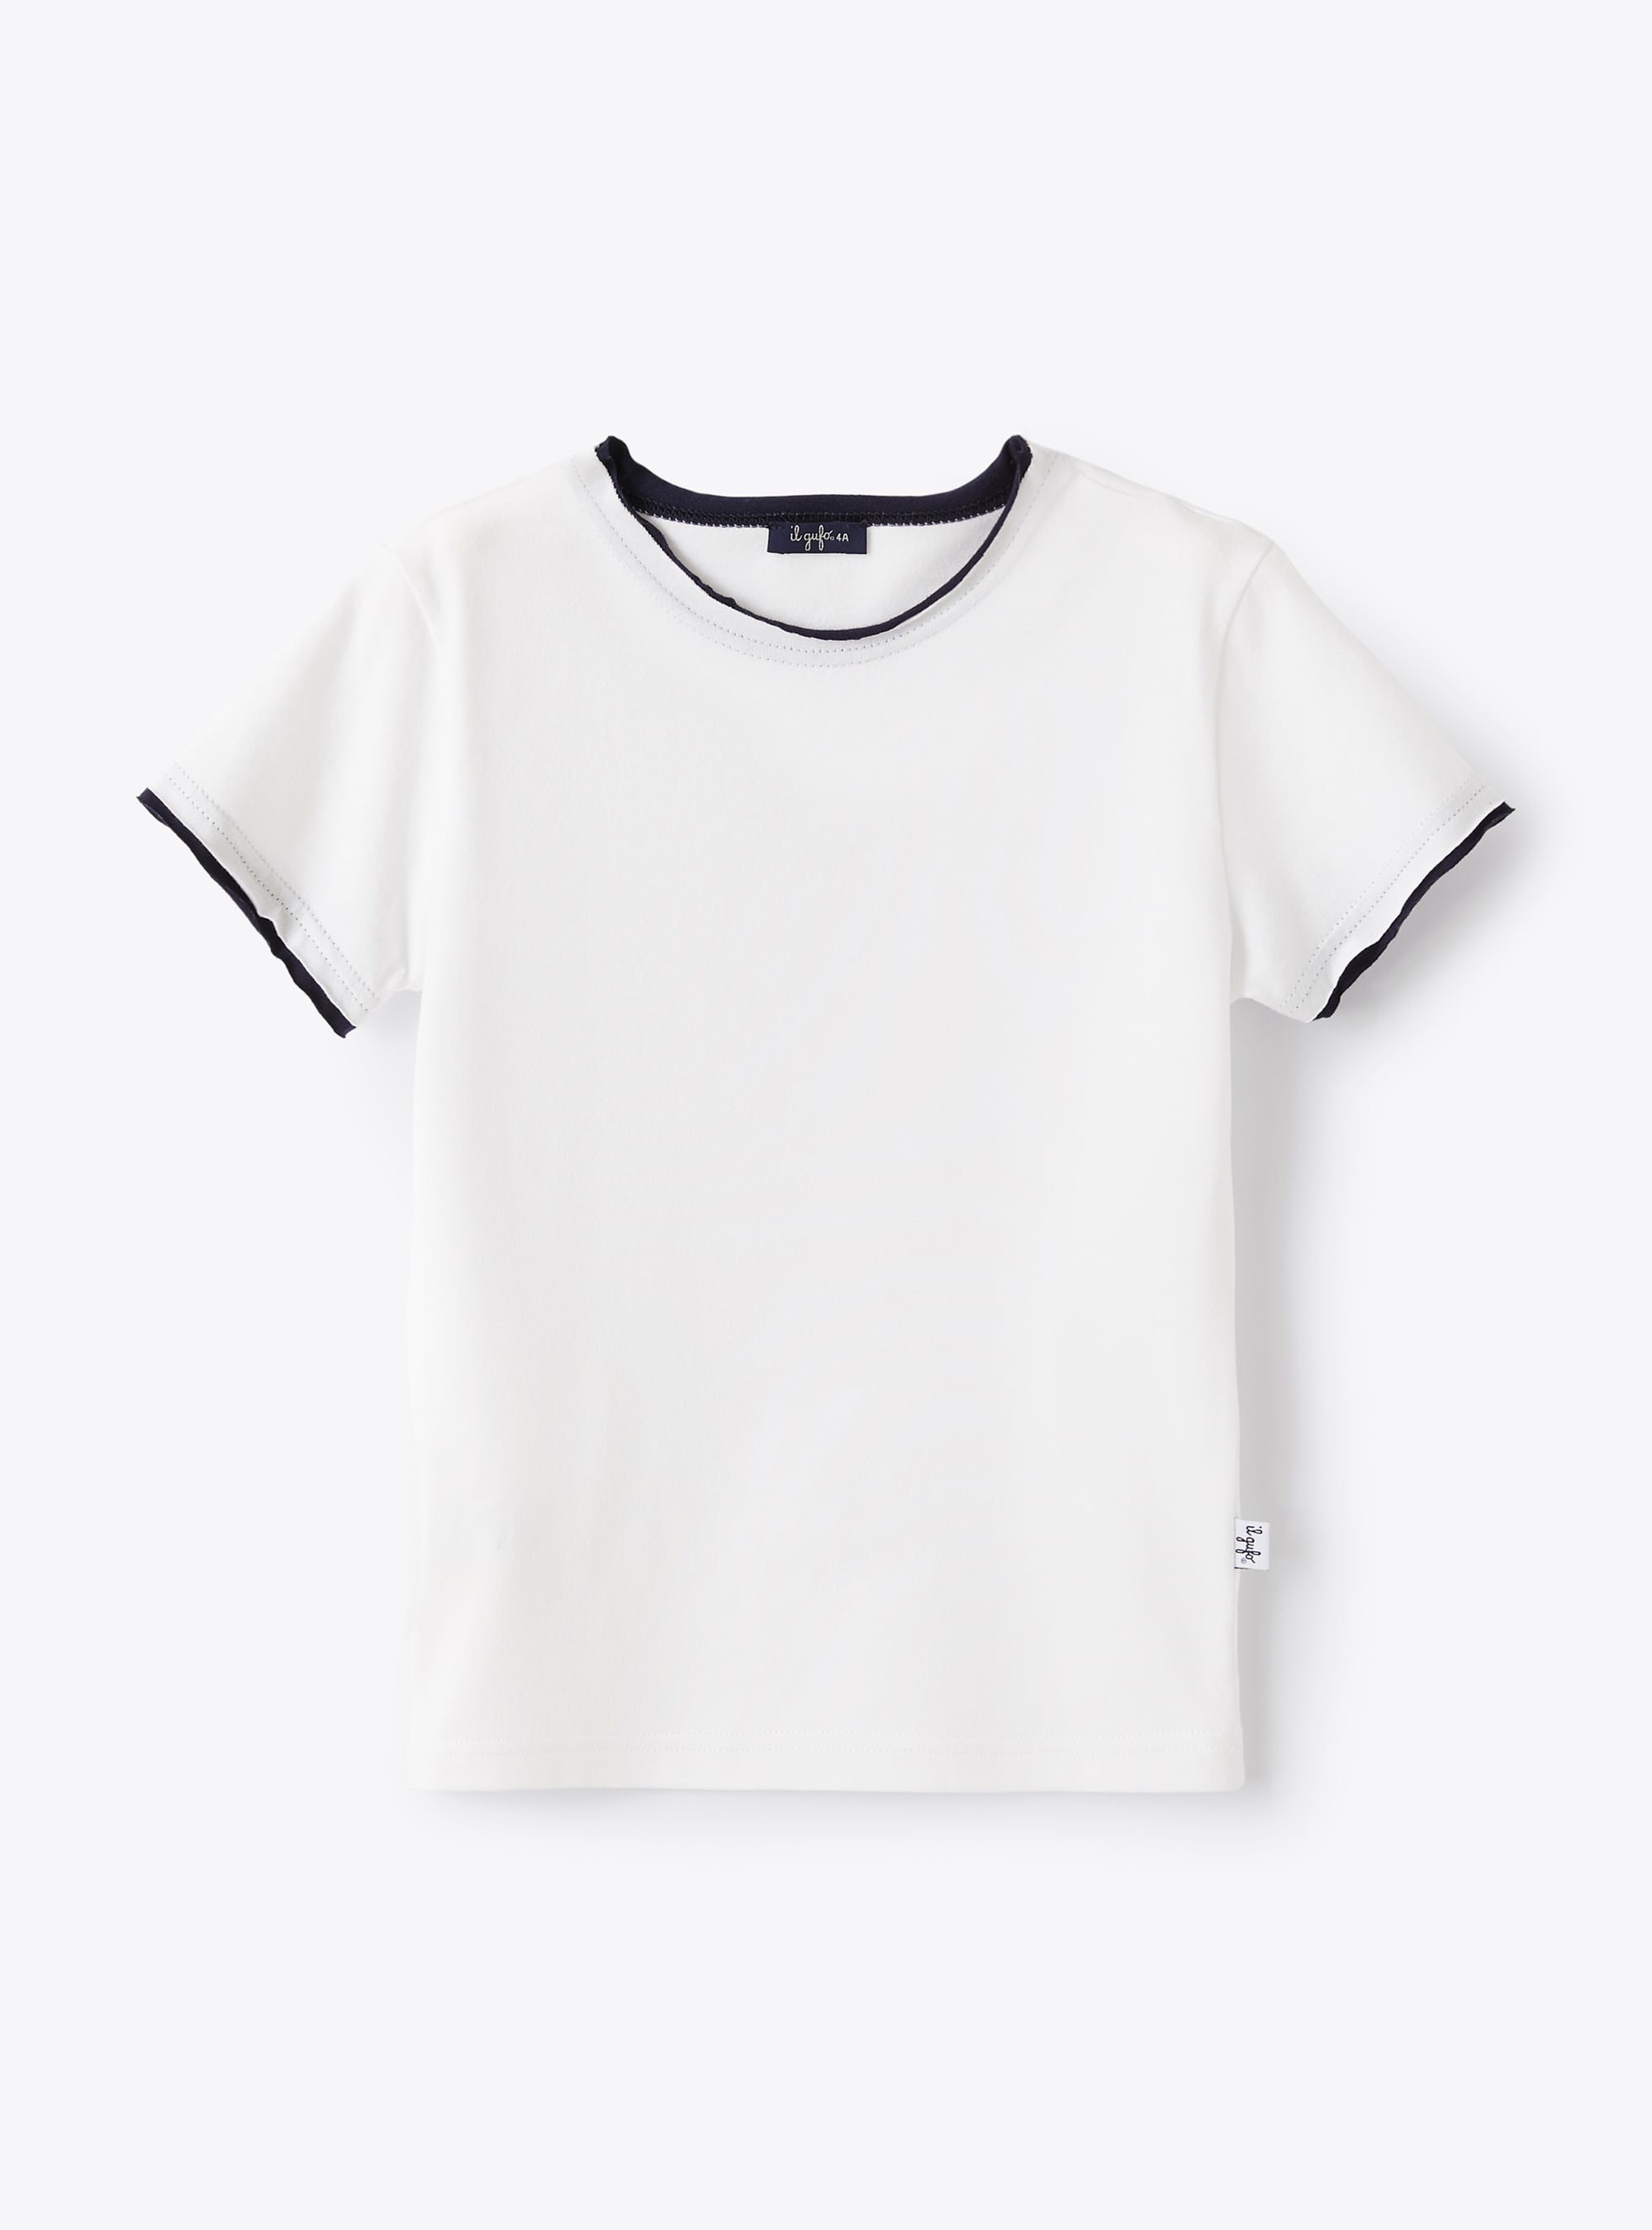 Weißes T-Shirt mit blauen Profilen - T-shirts - Il Gufo